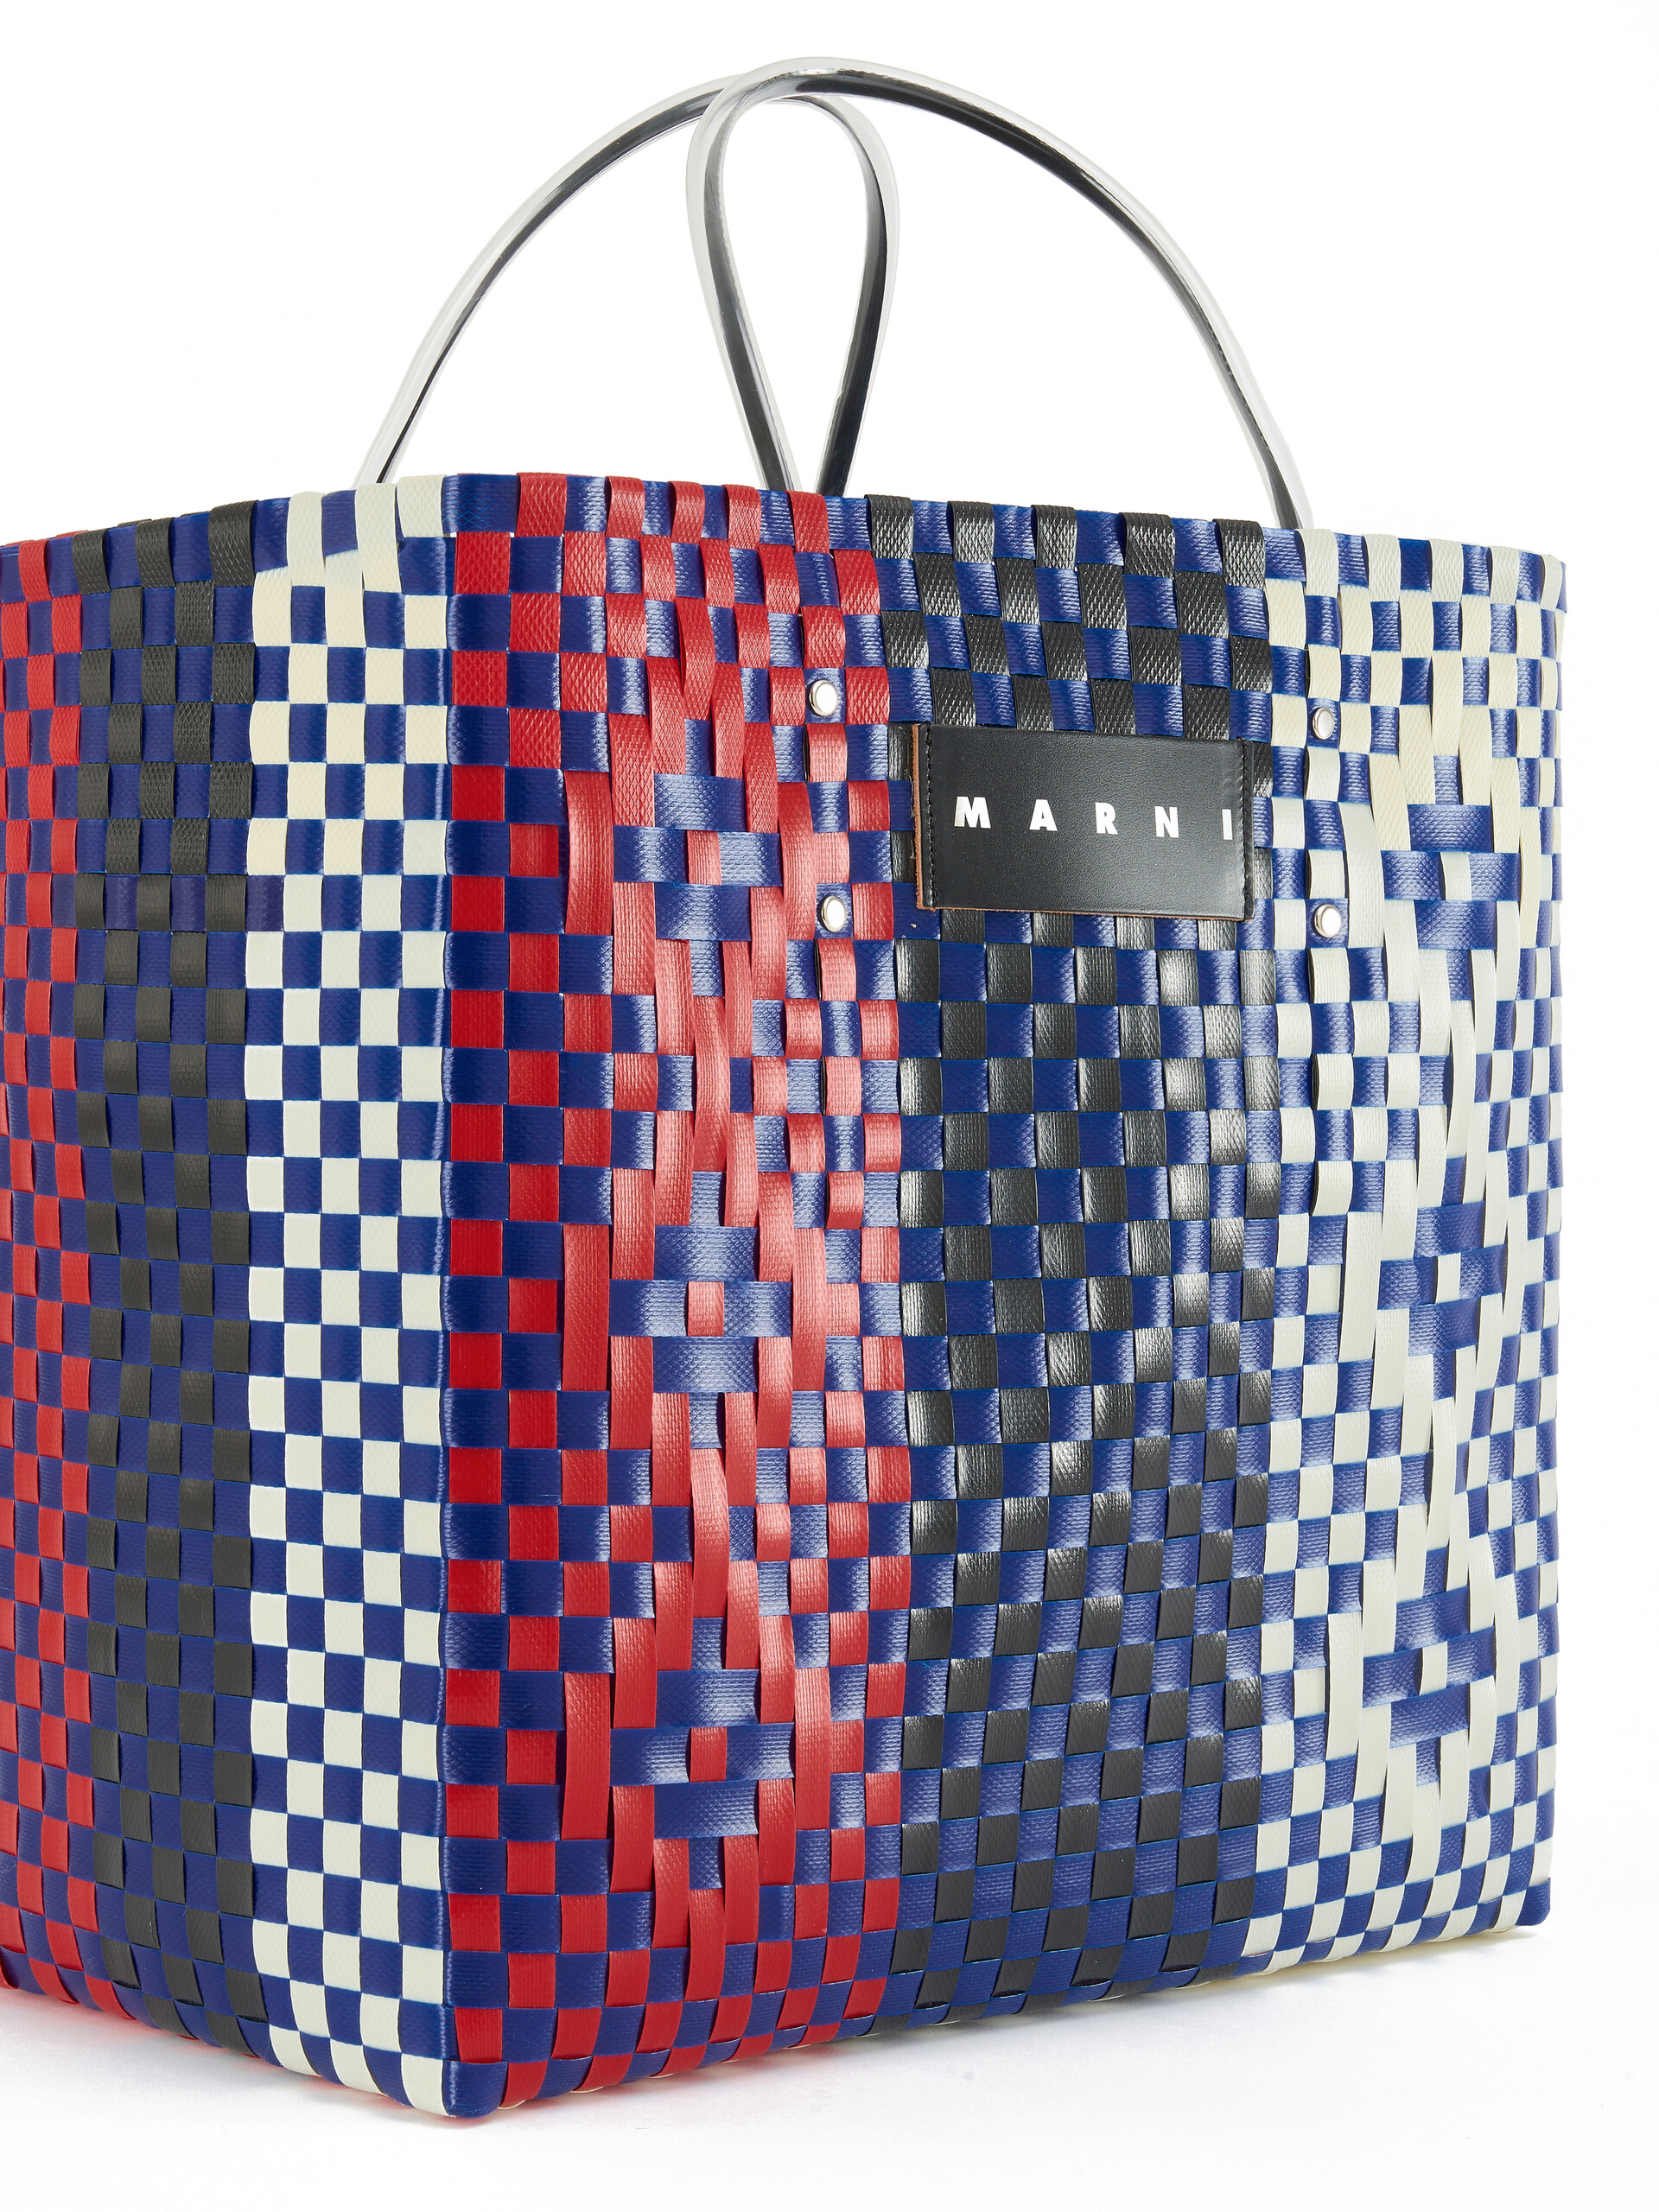 Red rhombus MARNI MARKET LARGE BASKET bag - Shopping Bags - Image 4